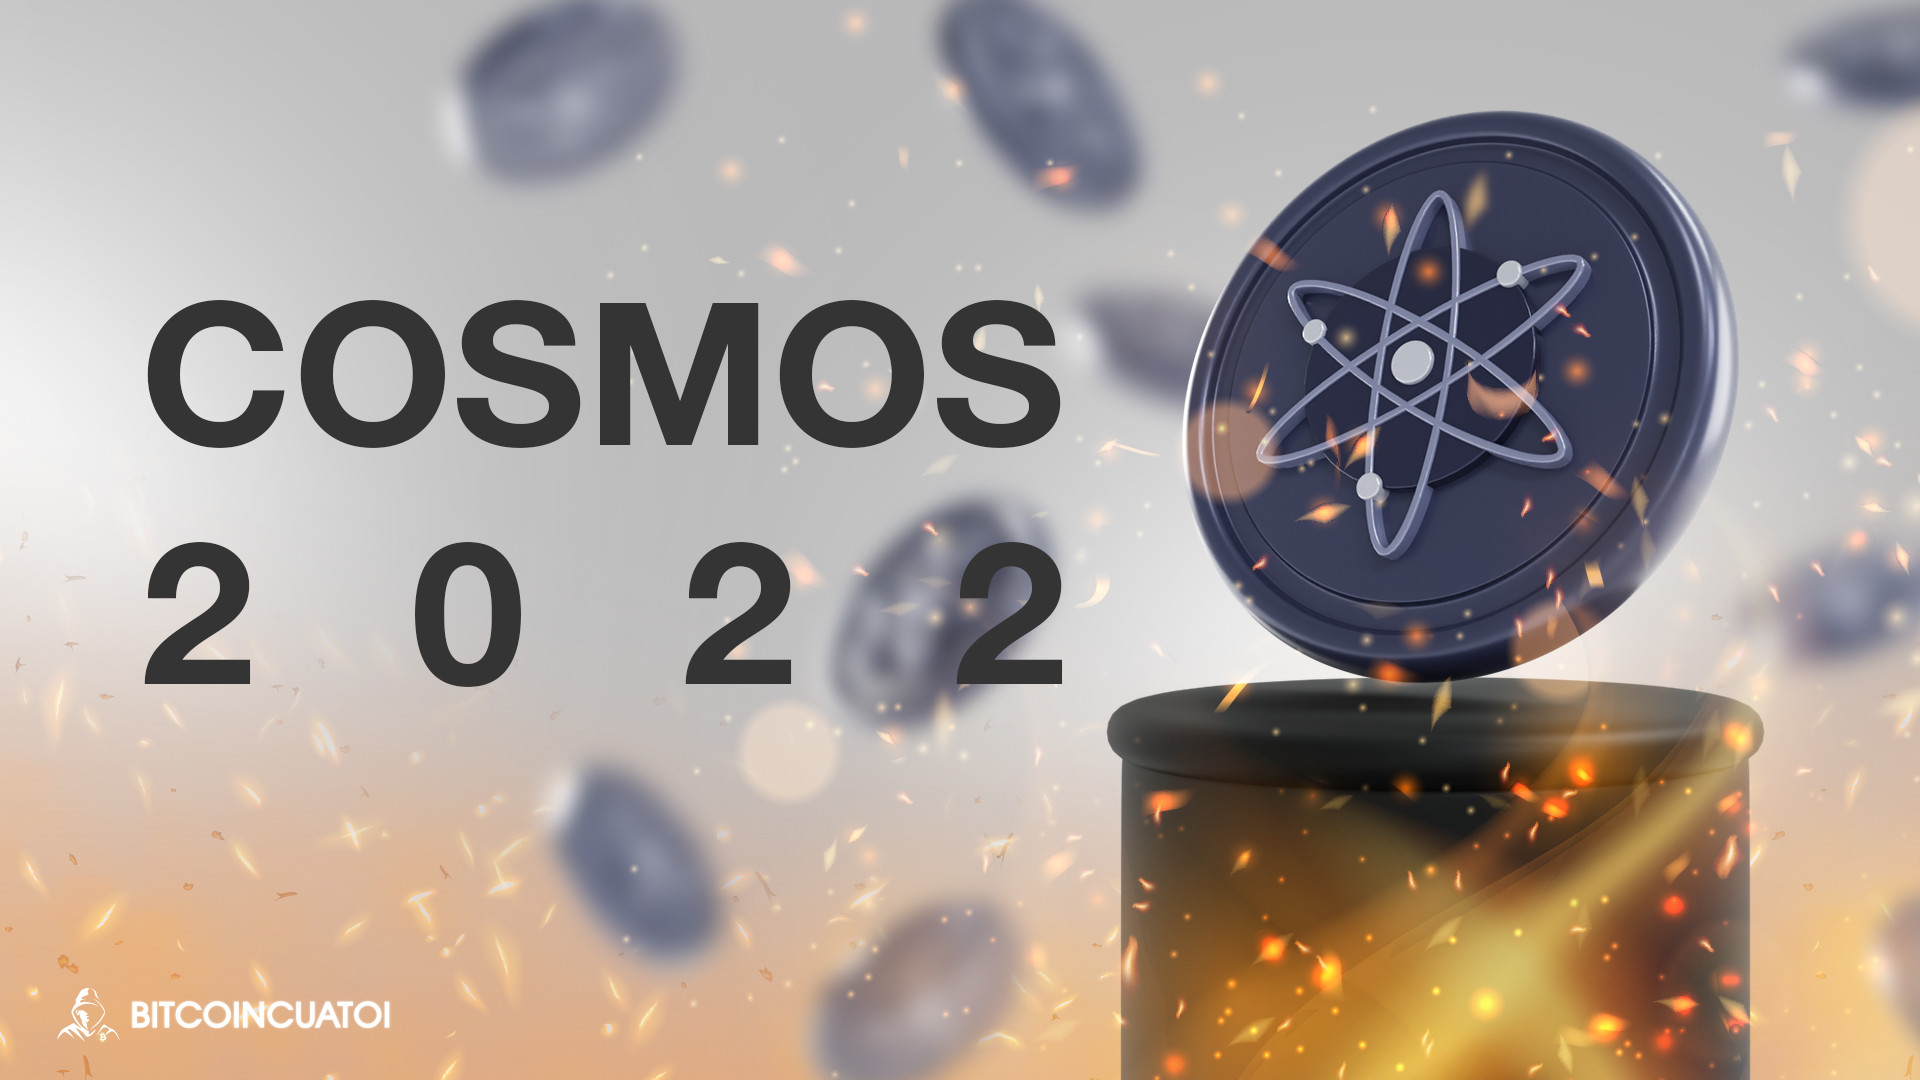 Cosmos đang nóng lên, liệu 2022 sẽ là năm thành công của Cosmos?